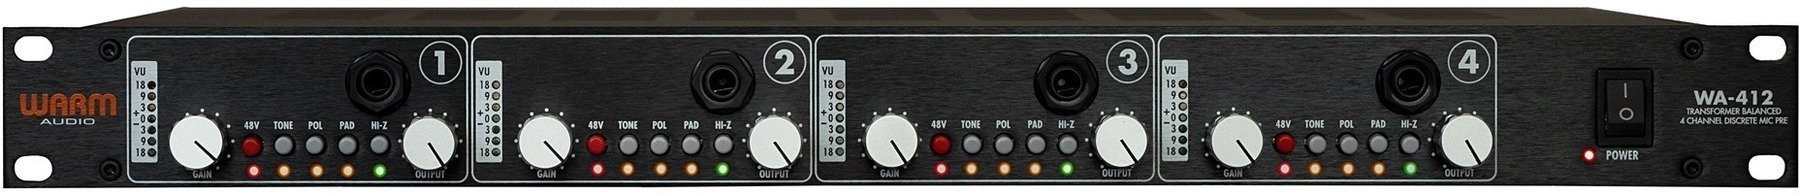 Pré-amplificador de microfone Warm Audio WA-412 Pré-amplificador de microfone